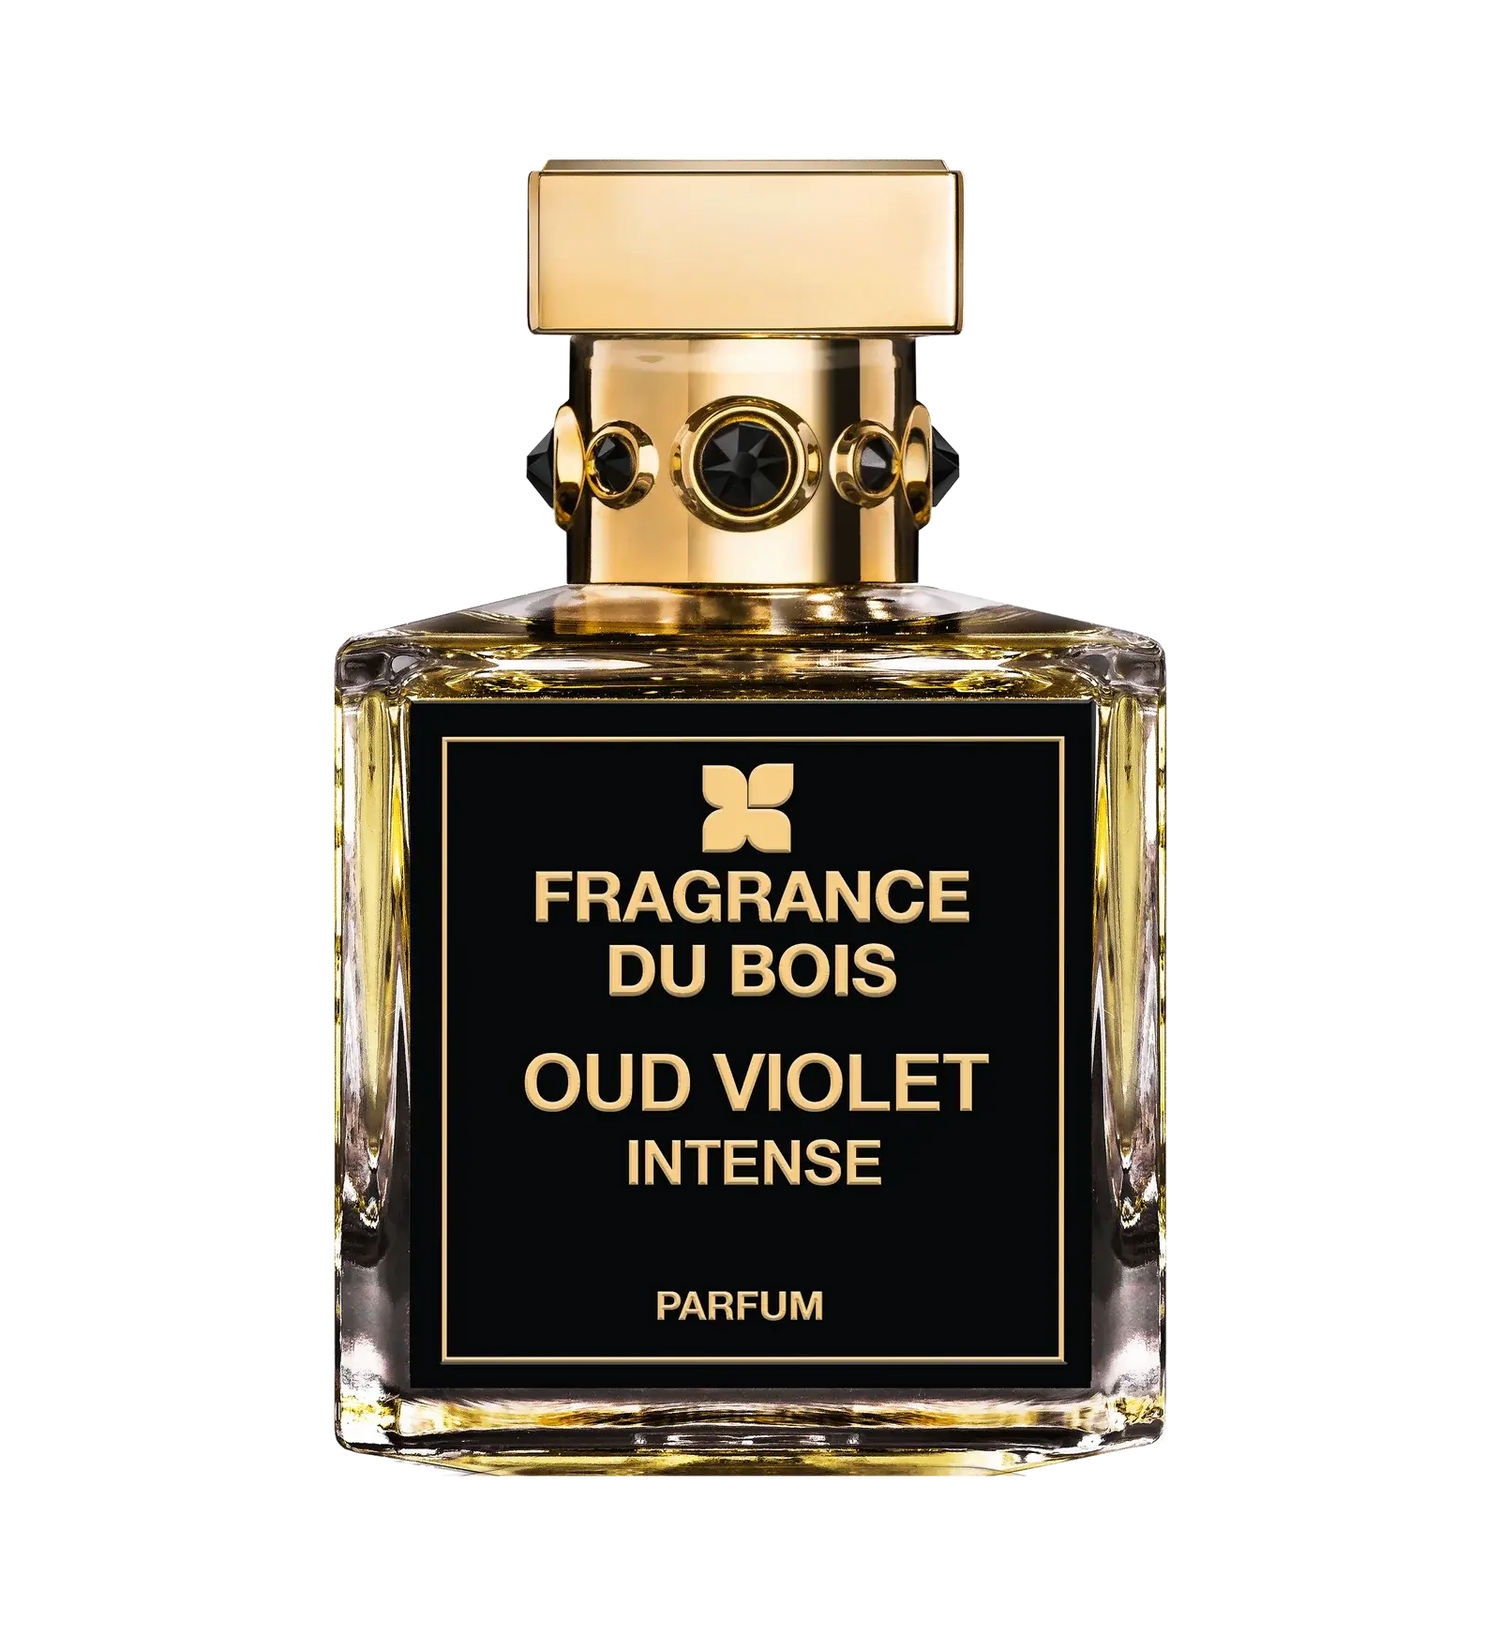 Fragrance du bois Fragrance du Bois Oud Violet Intense Edp - 100 ml